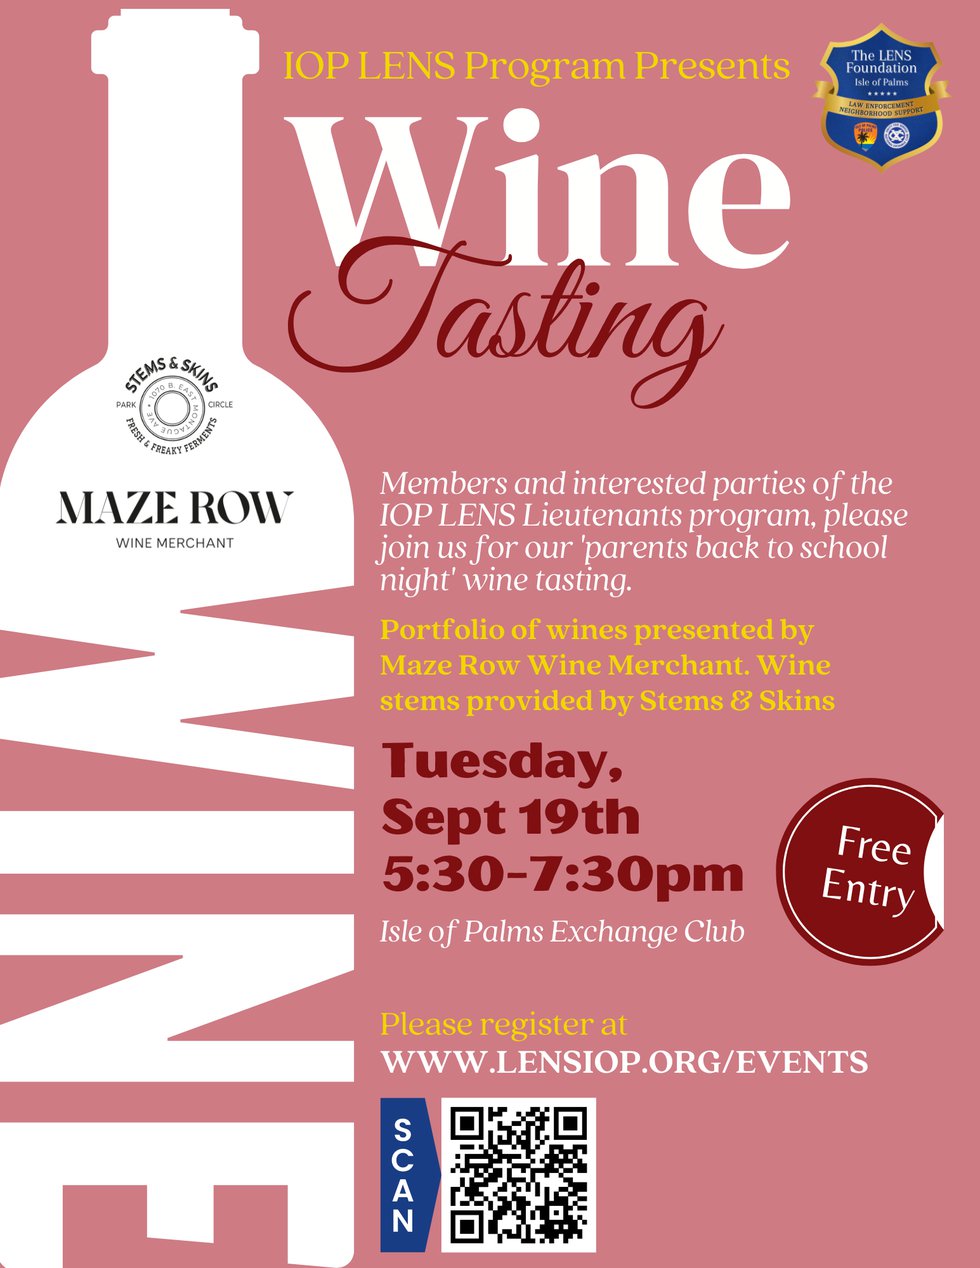 LENS wine tasting event - wine tasting event September 19th